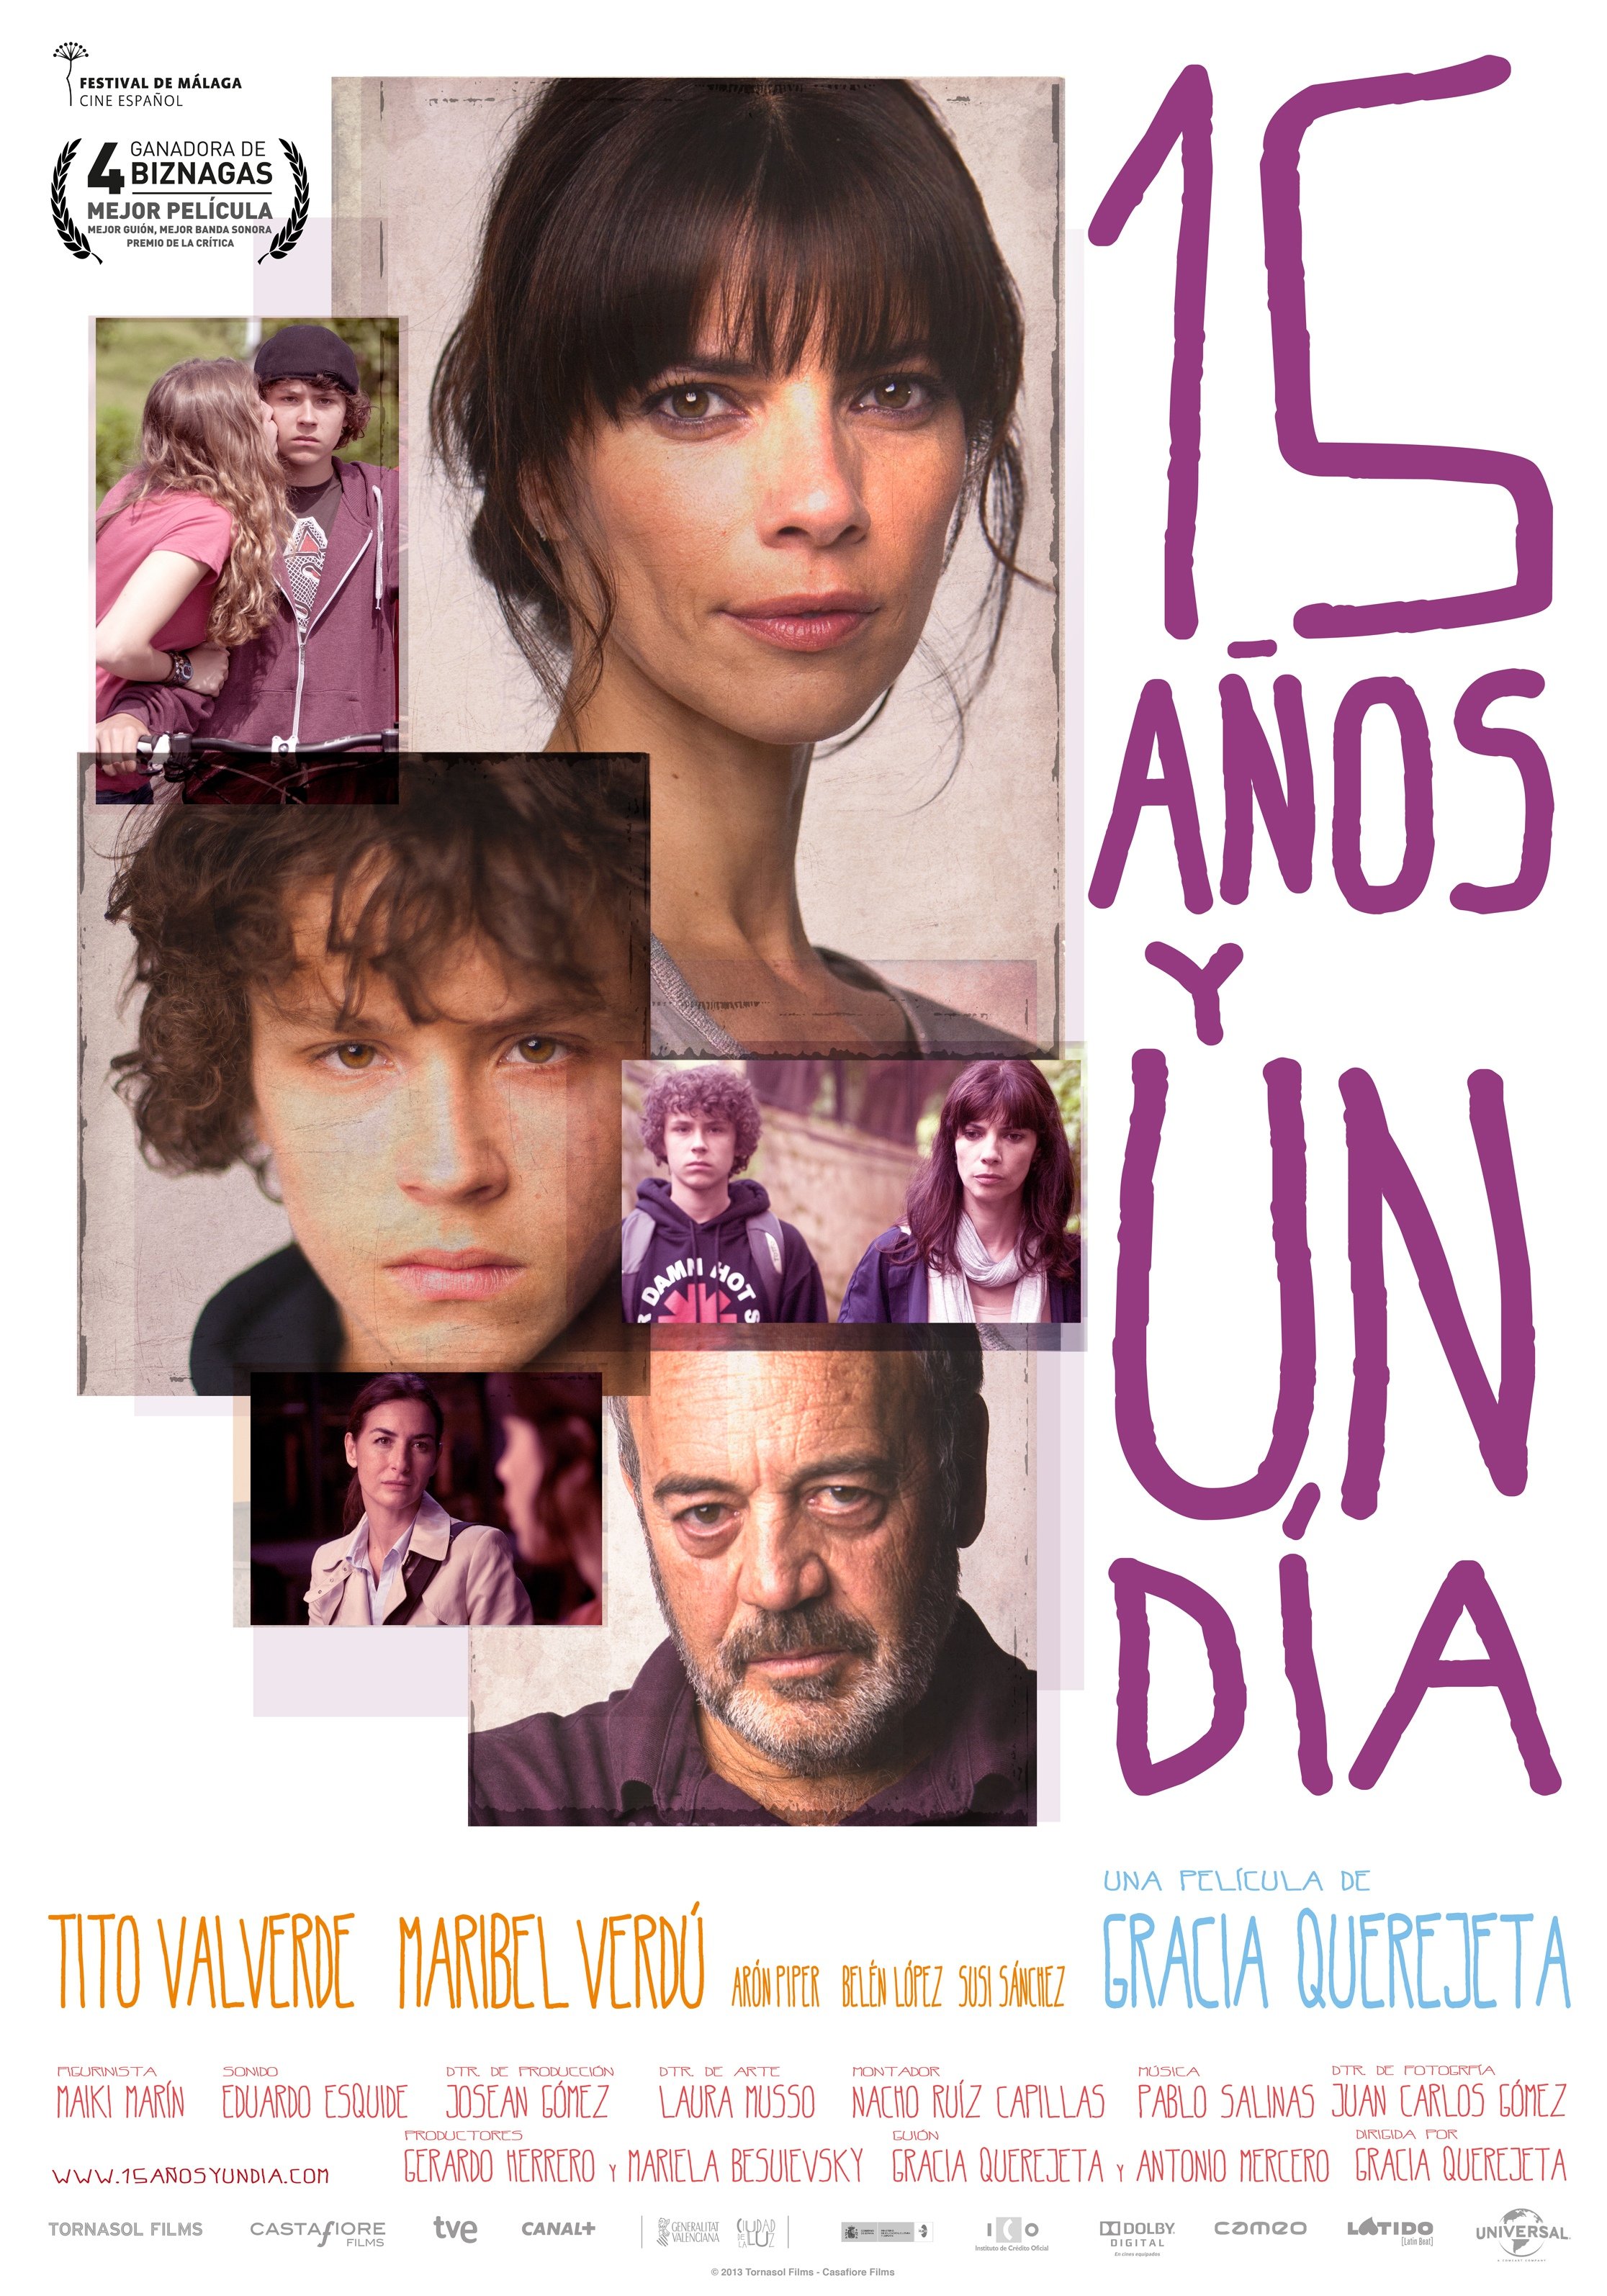 Spanish poster of the movie 15 años y un día